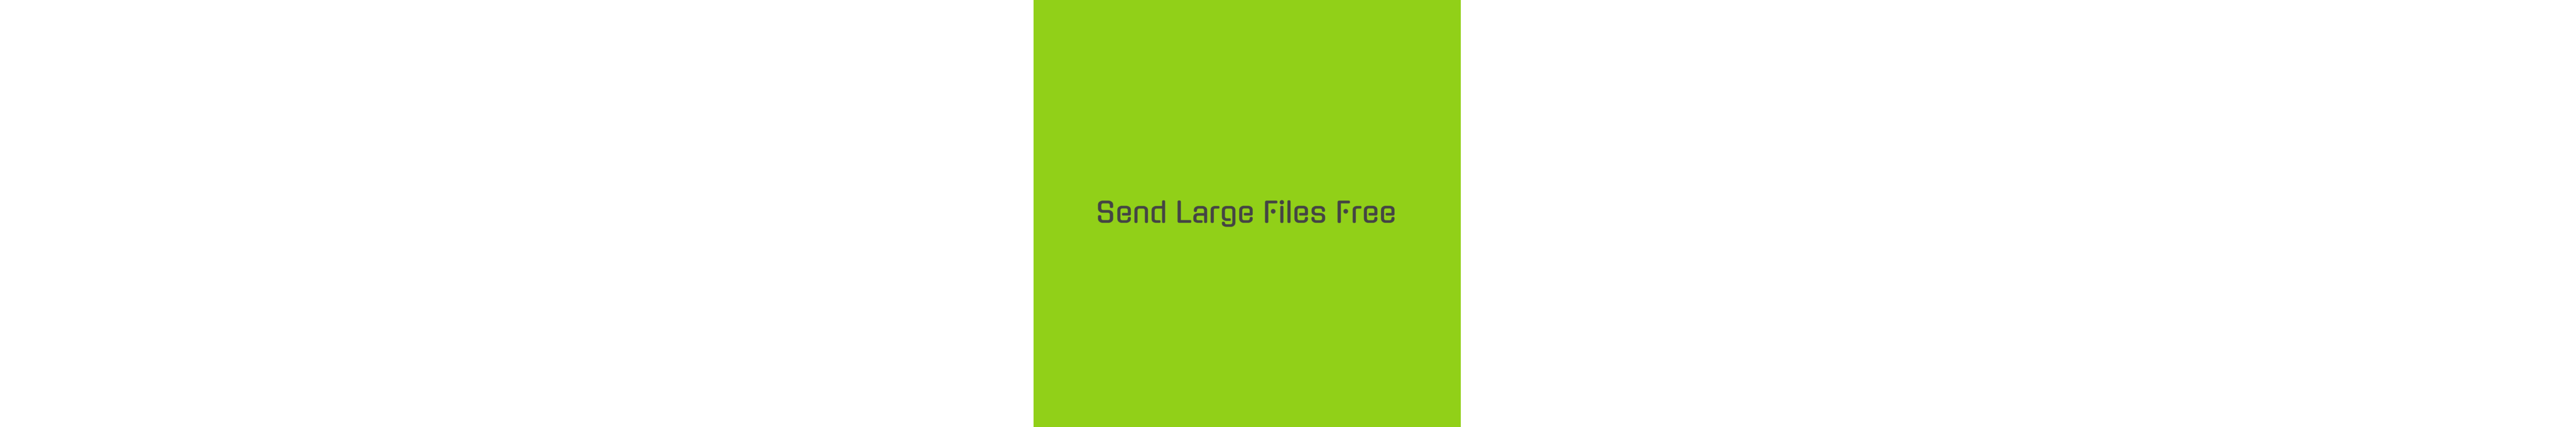 Send large files free